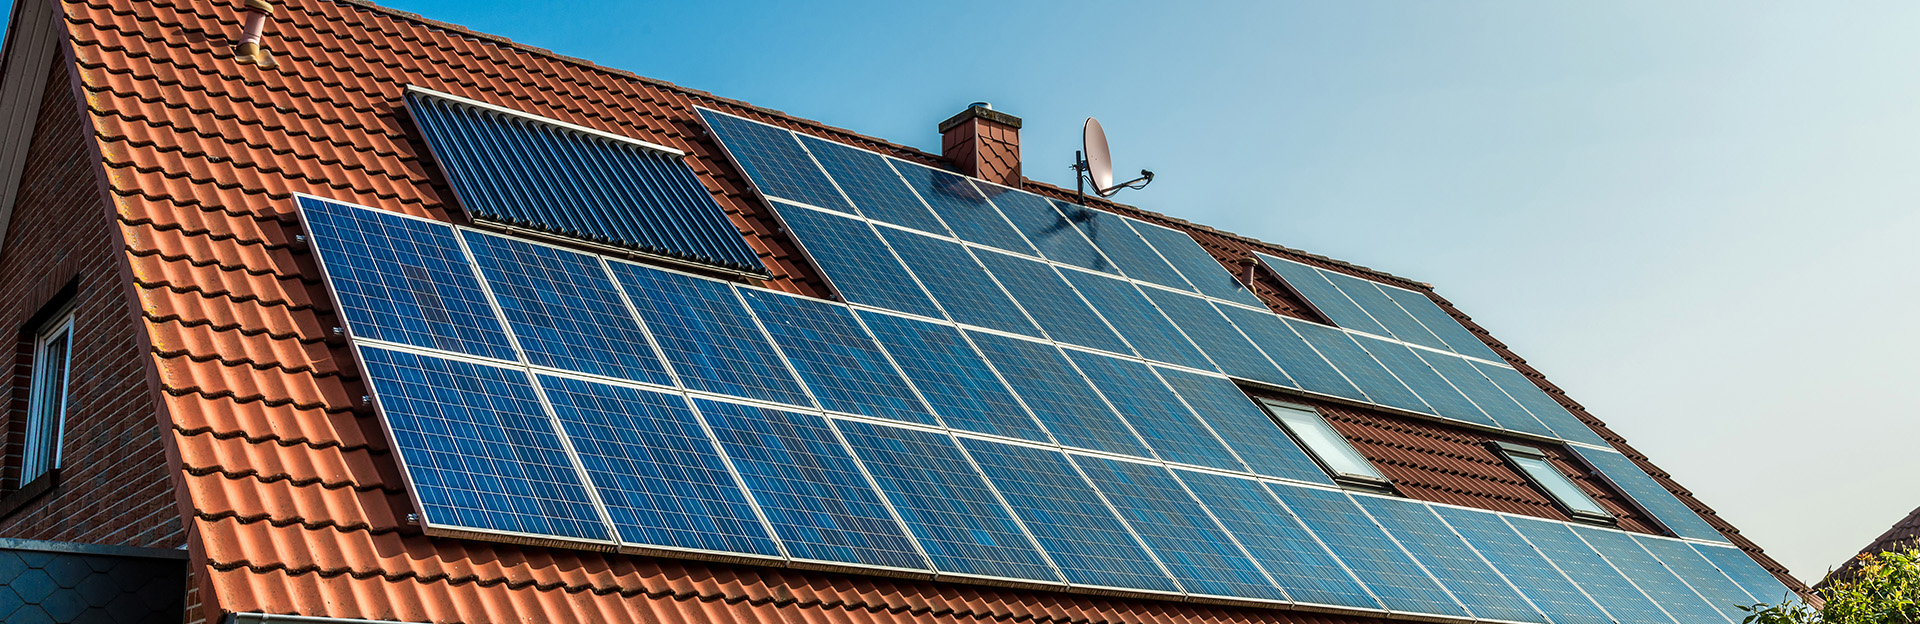 Quelle est la différence entre un panneau solaire thermique et un panneau photovoltaïque ?